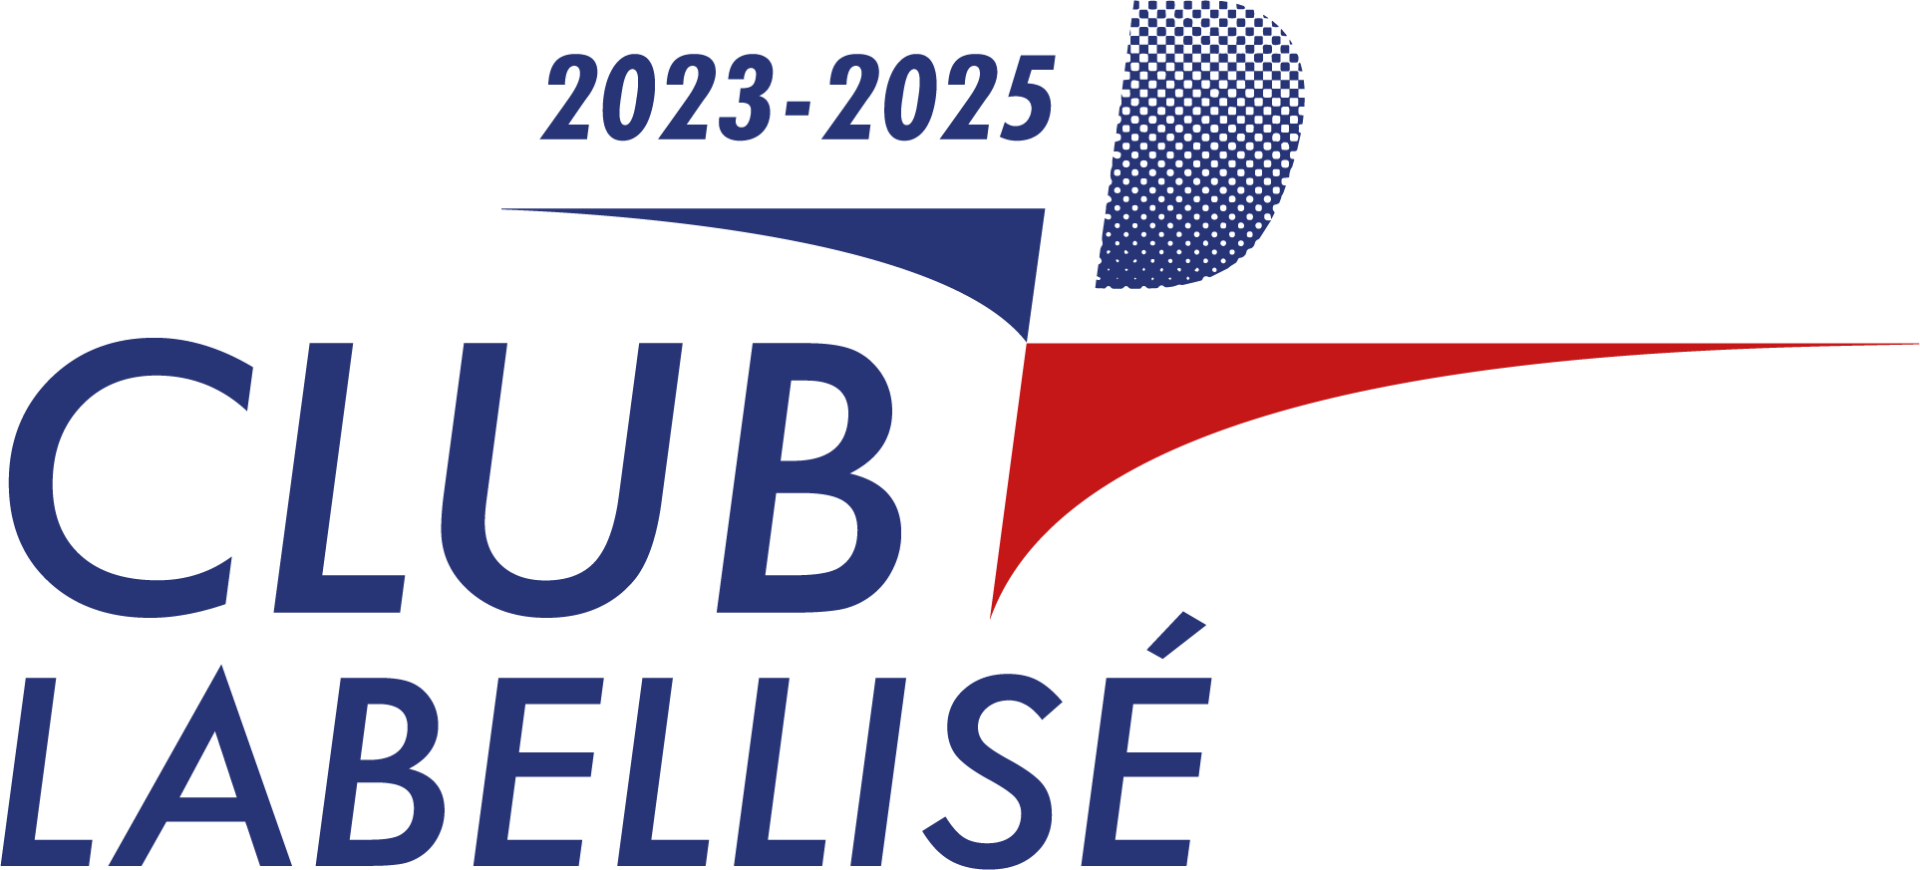 Label club 2023 2025